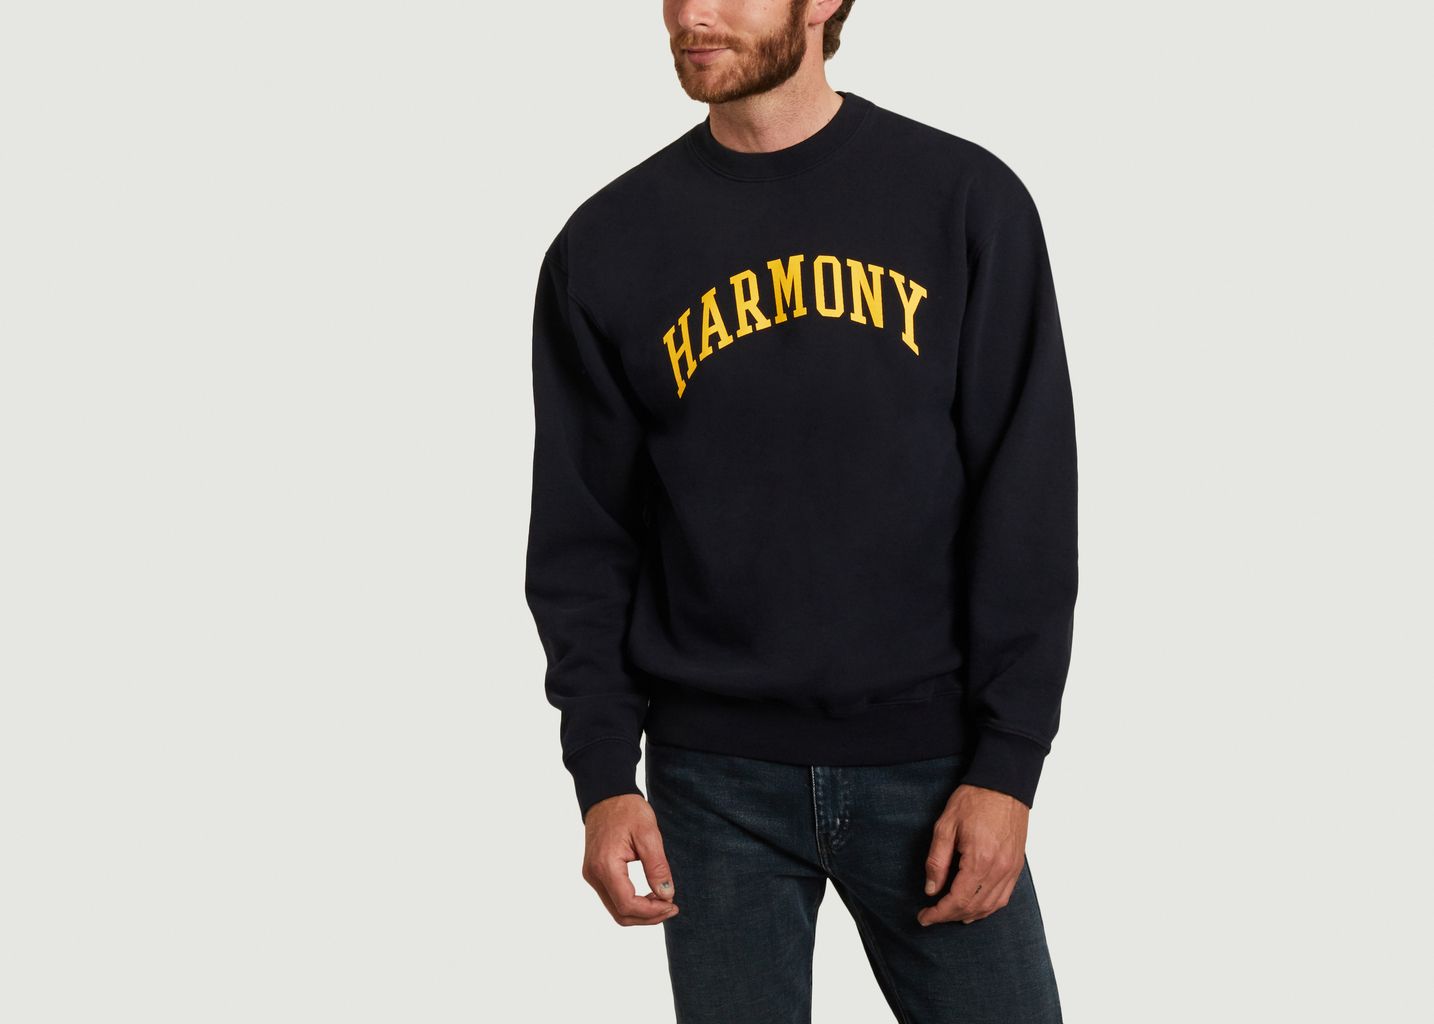 University sweatshirt - Harmony